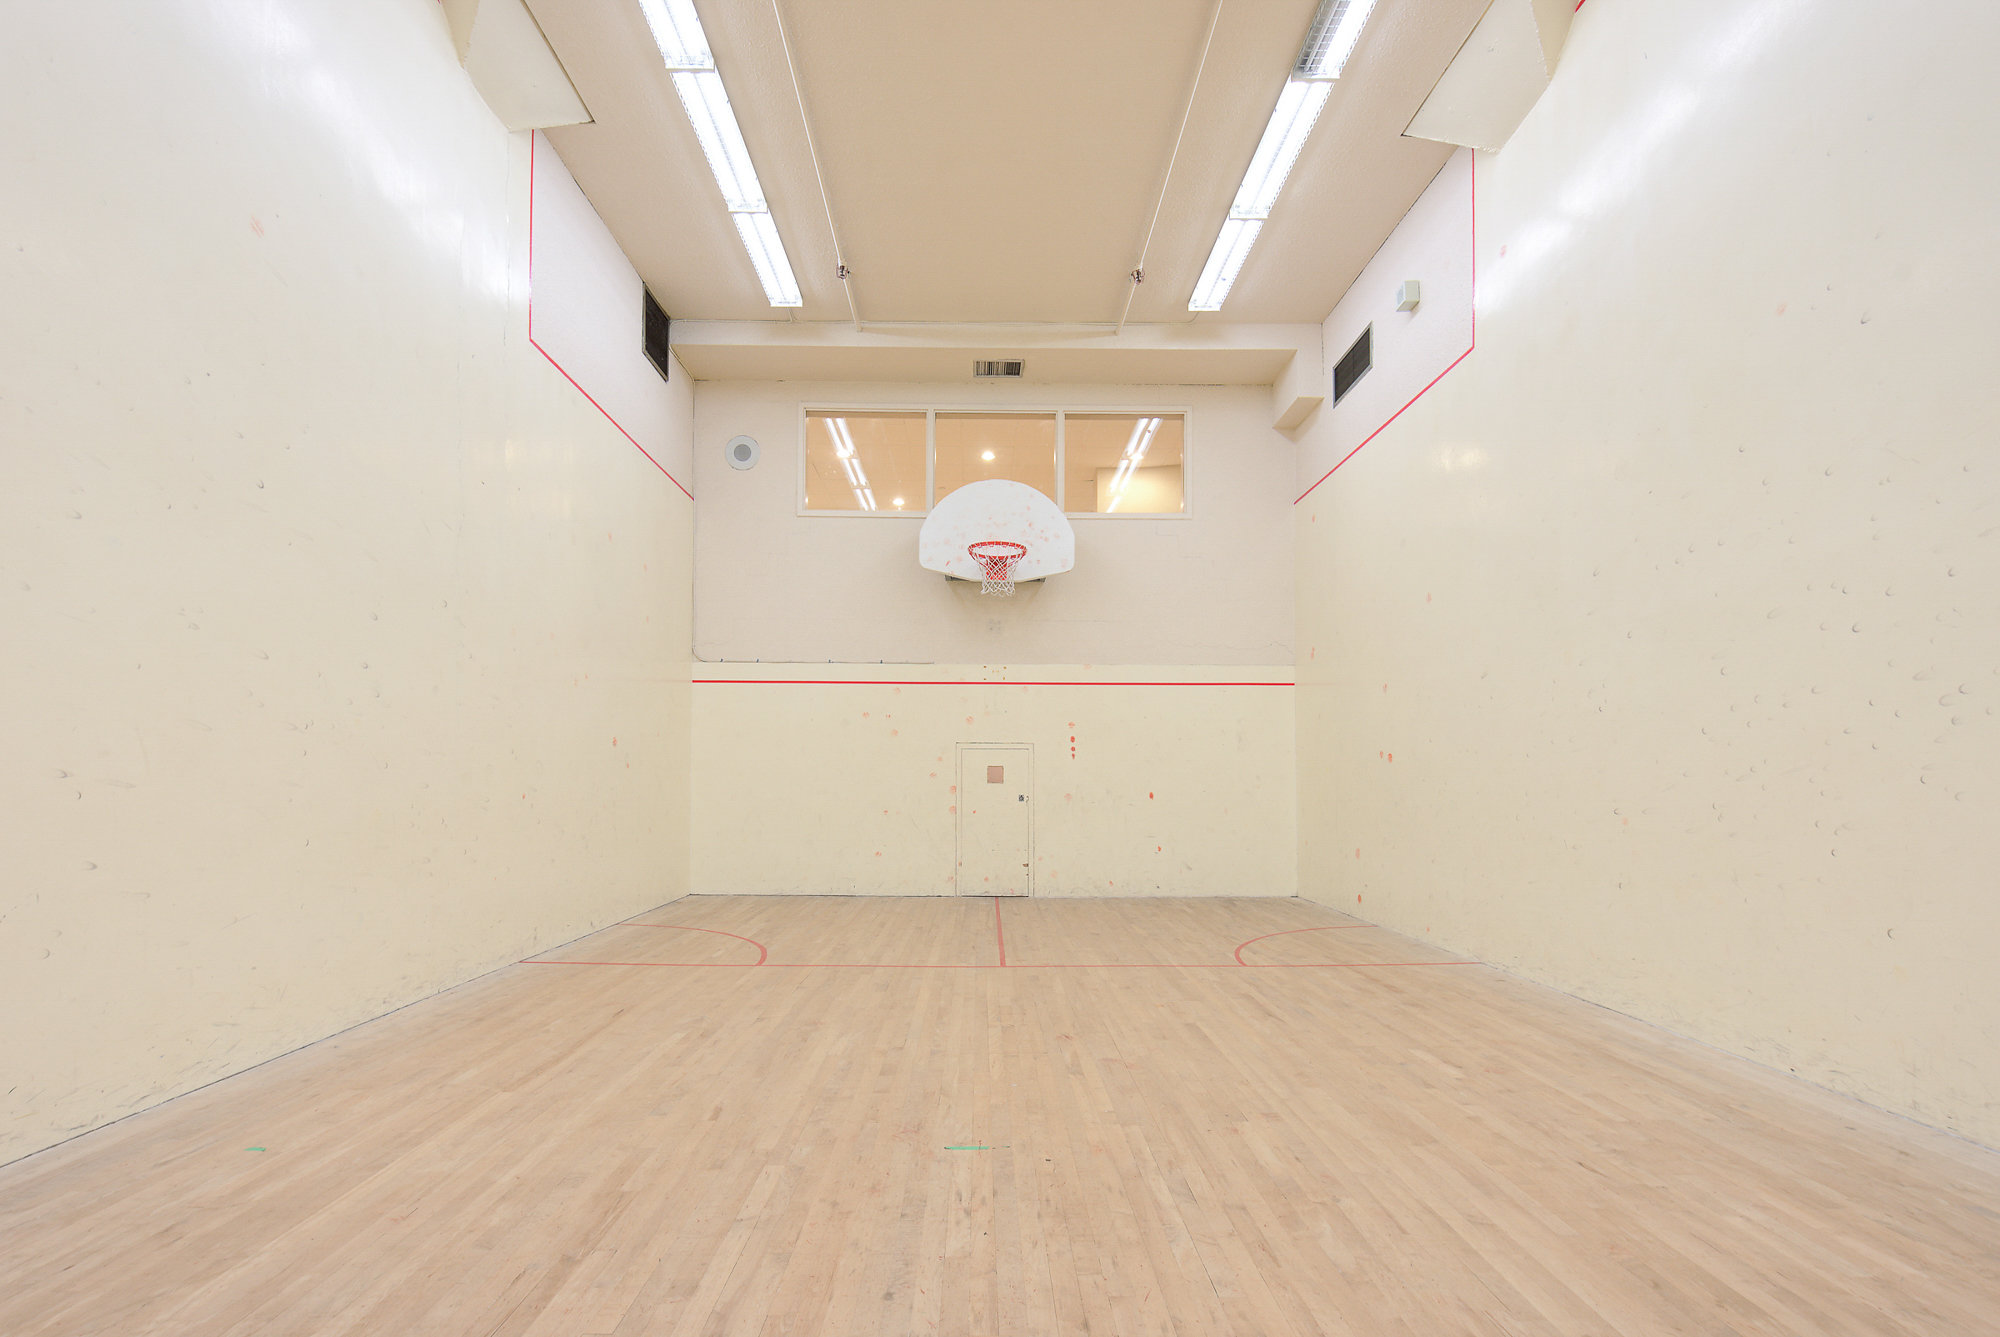 Squash Courts